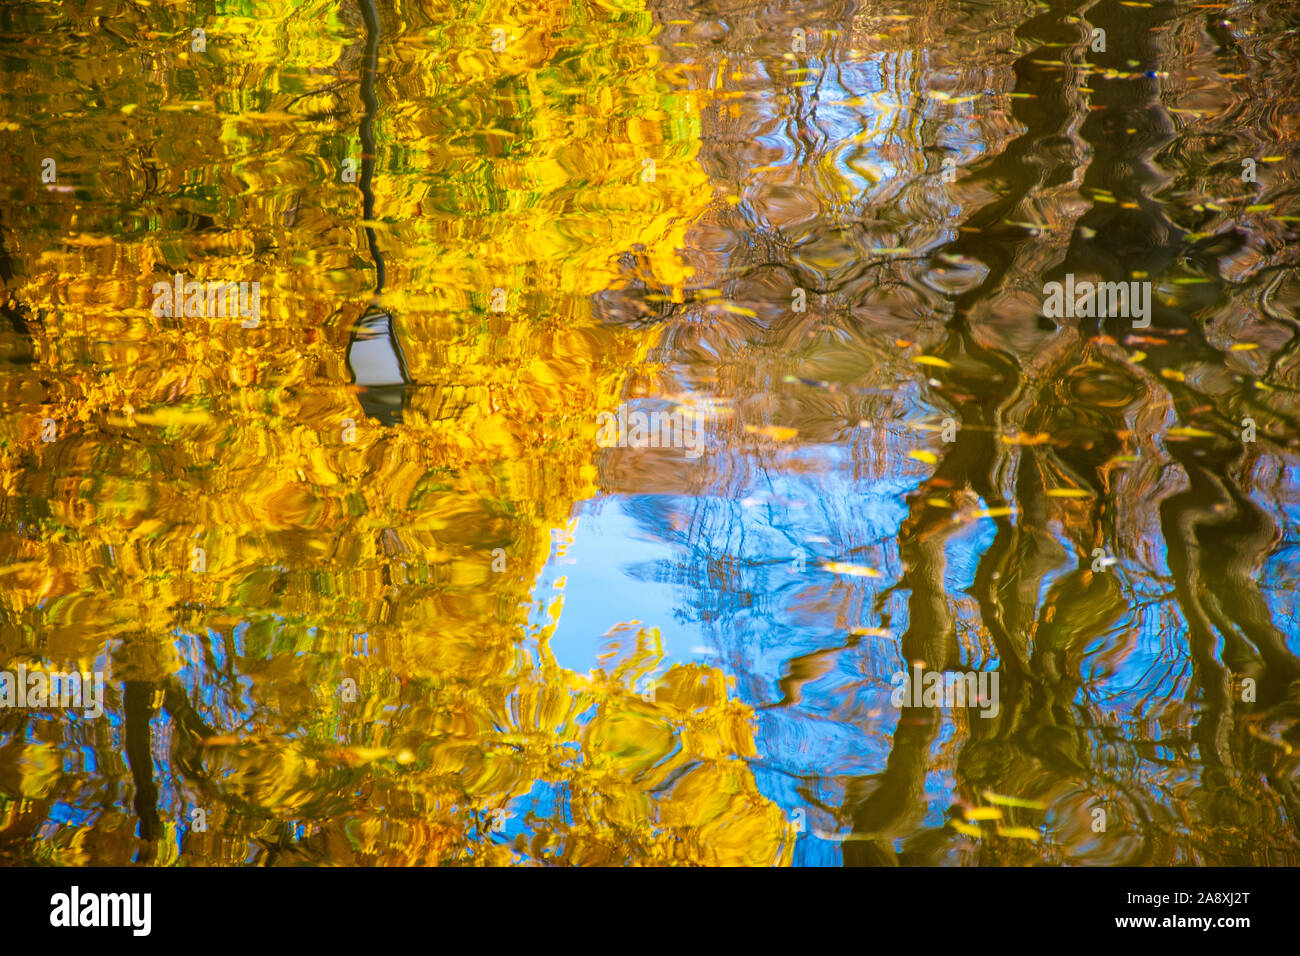 Hermoso parque en otoño con la vieja farola y hojas amarillas se reflejan en el agua Foto de stock